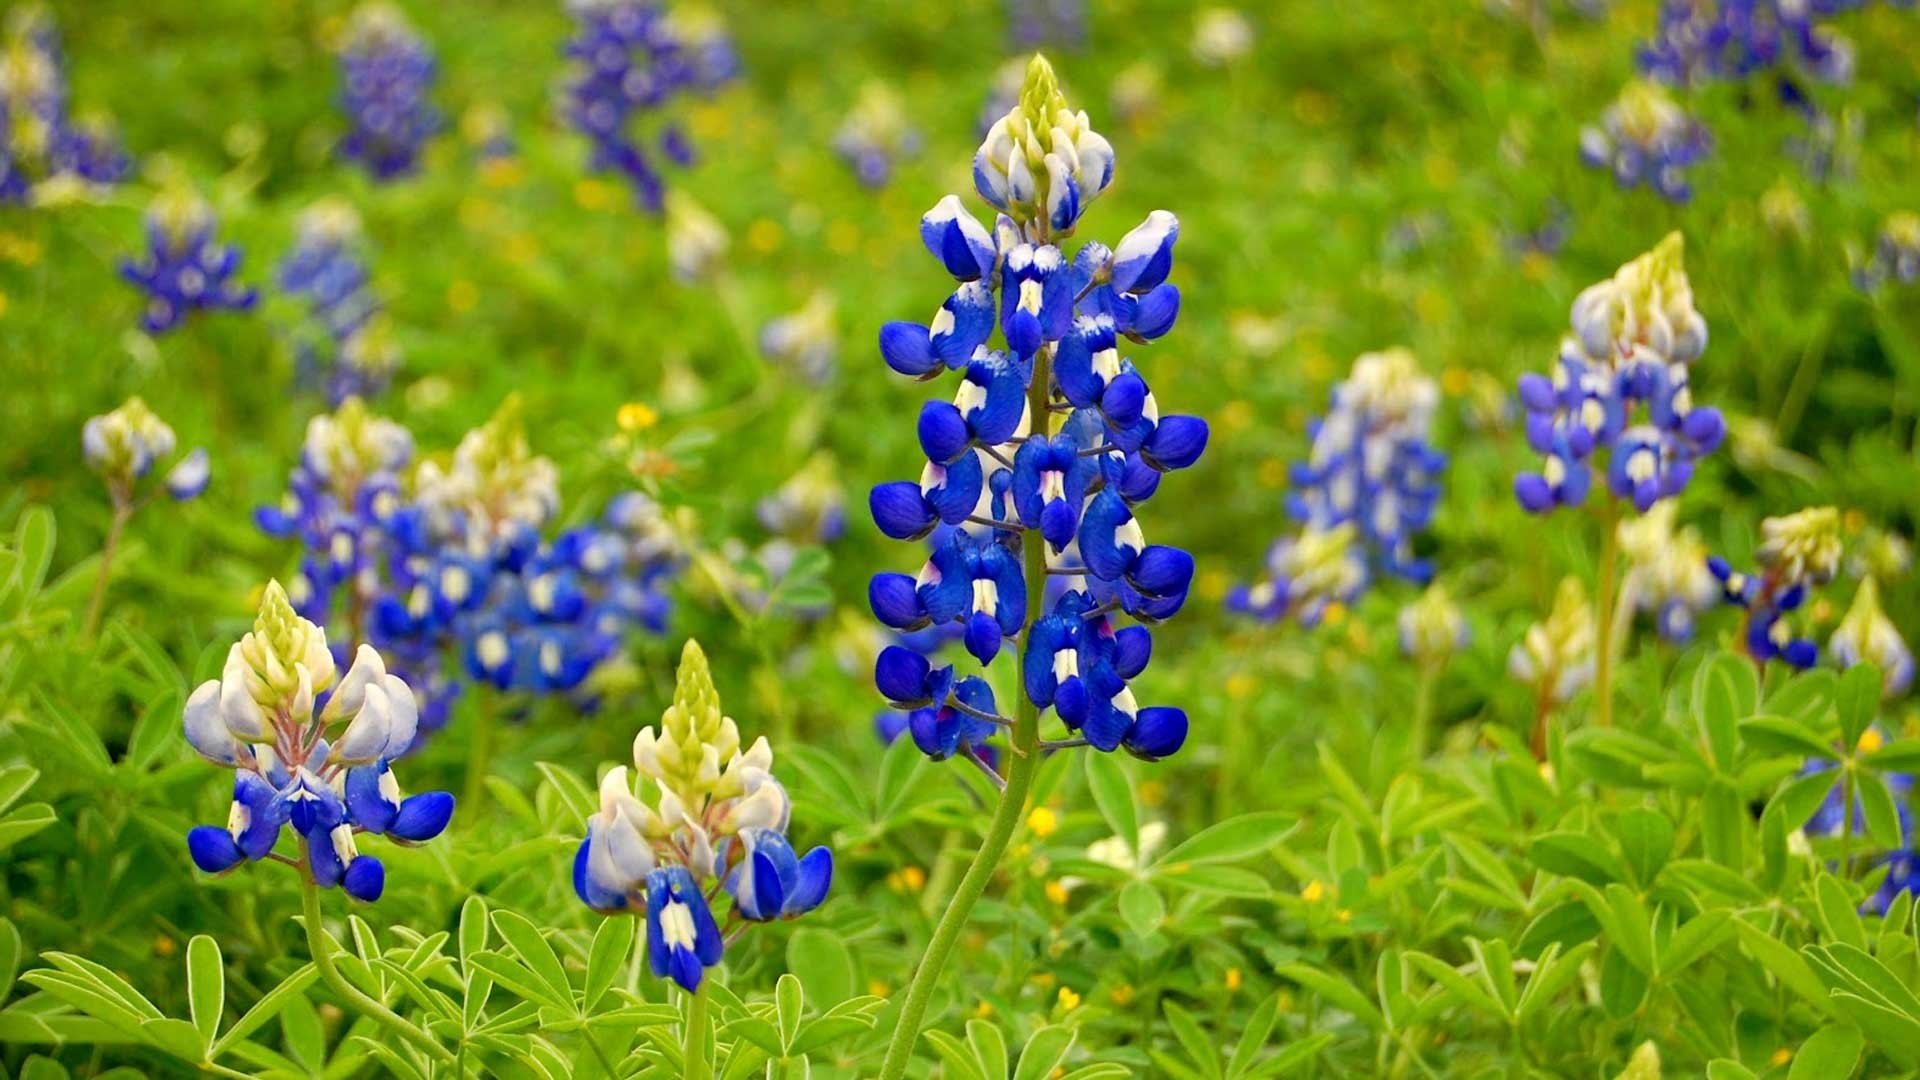 Bluebonnet, Flower wallpaper, Wildflower beauty, Texas landscapes, 1920x1080 Full HD Desktop